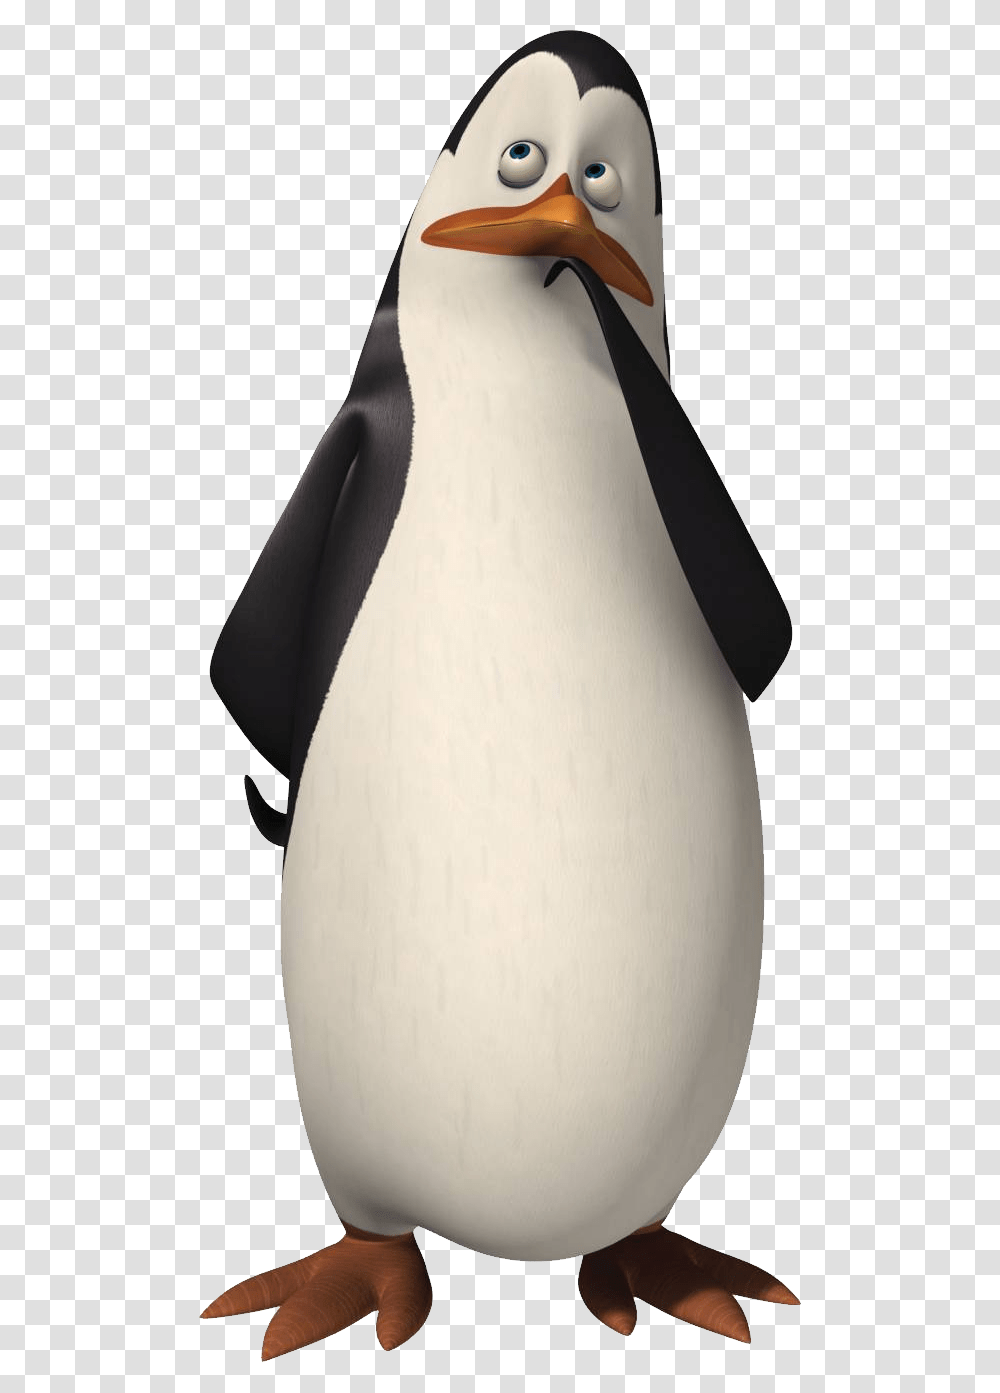 Madagascar Penguins, Character, King Penguin, Bird, Animal Transparent Png